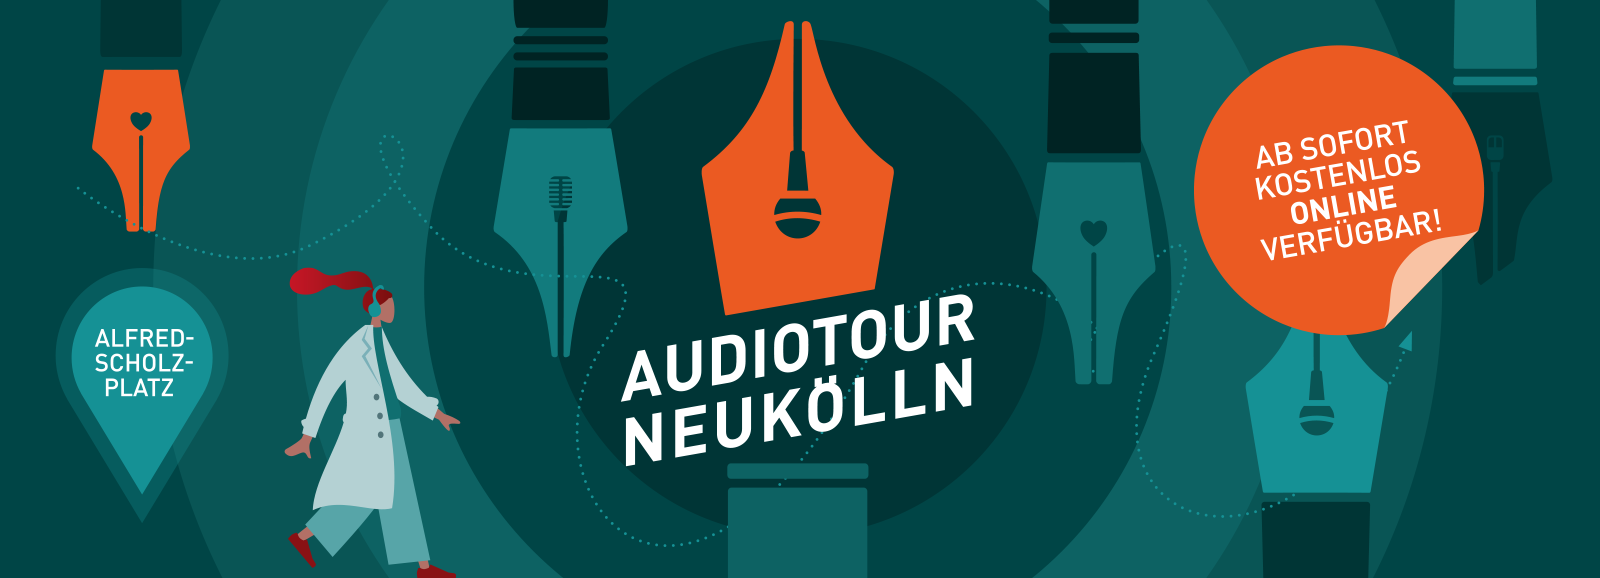 Kiezpoeten Audiotour Neukölln